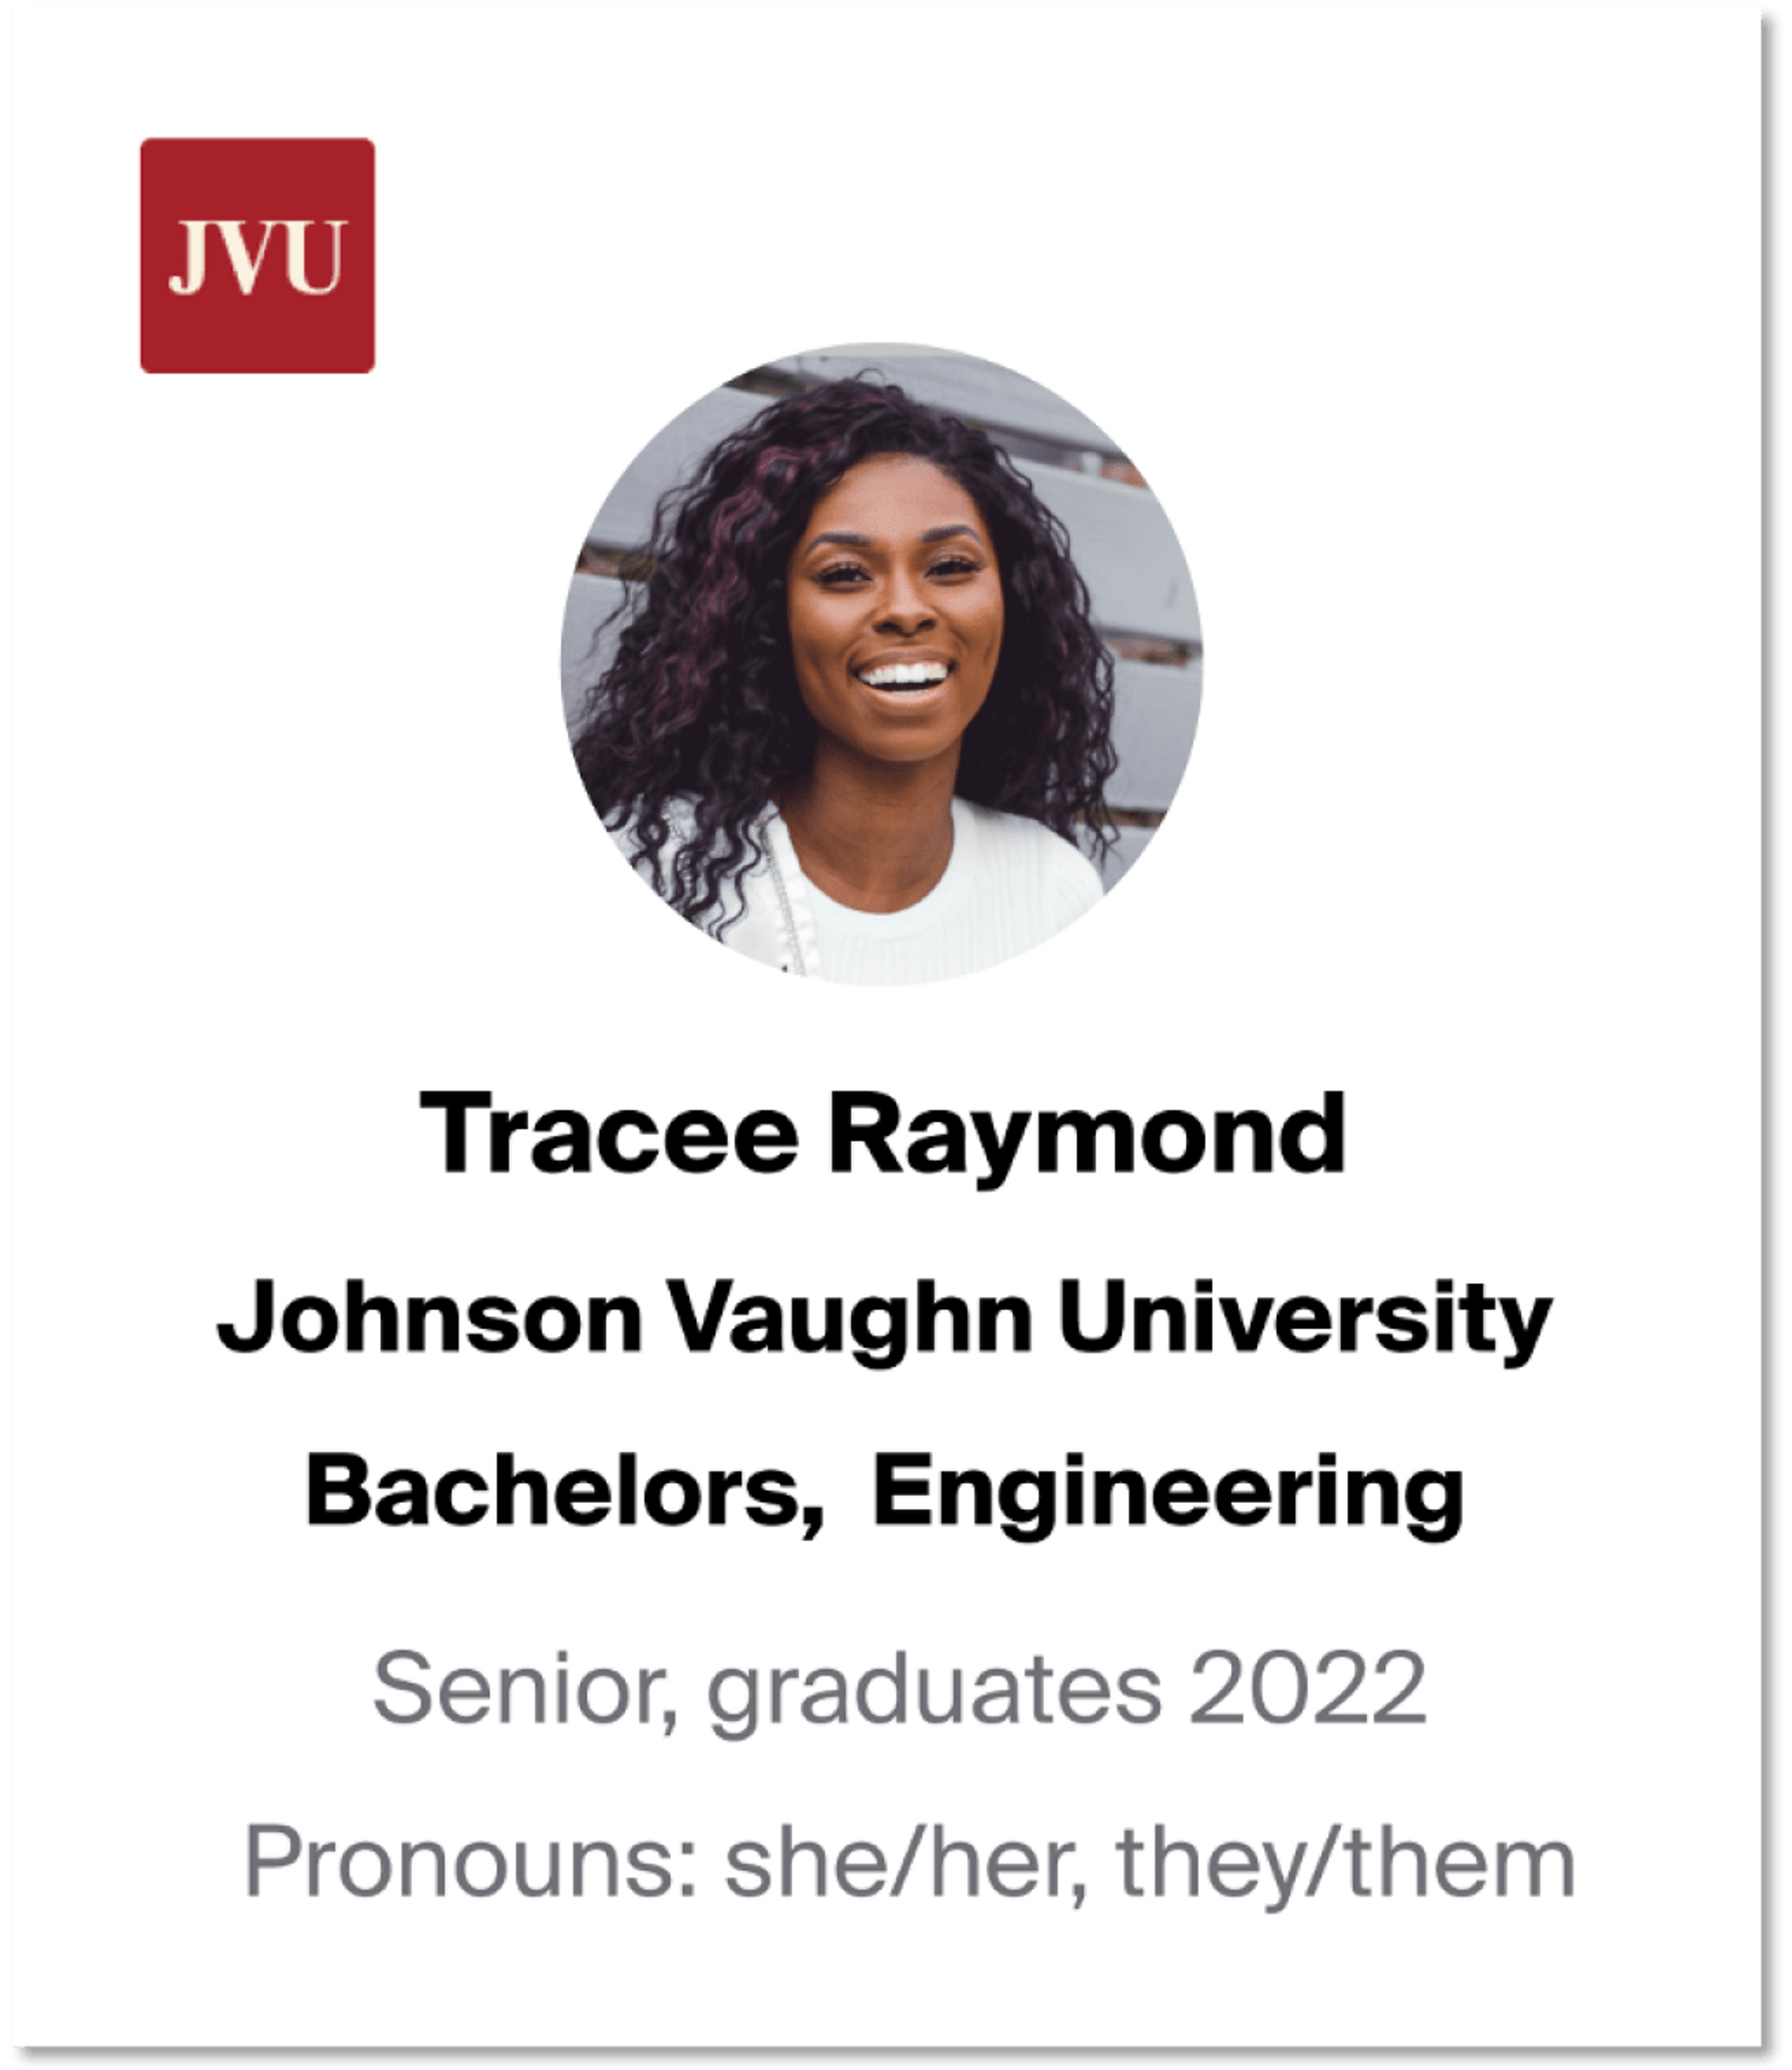 Pronouns on a student profile